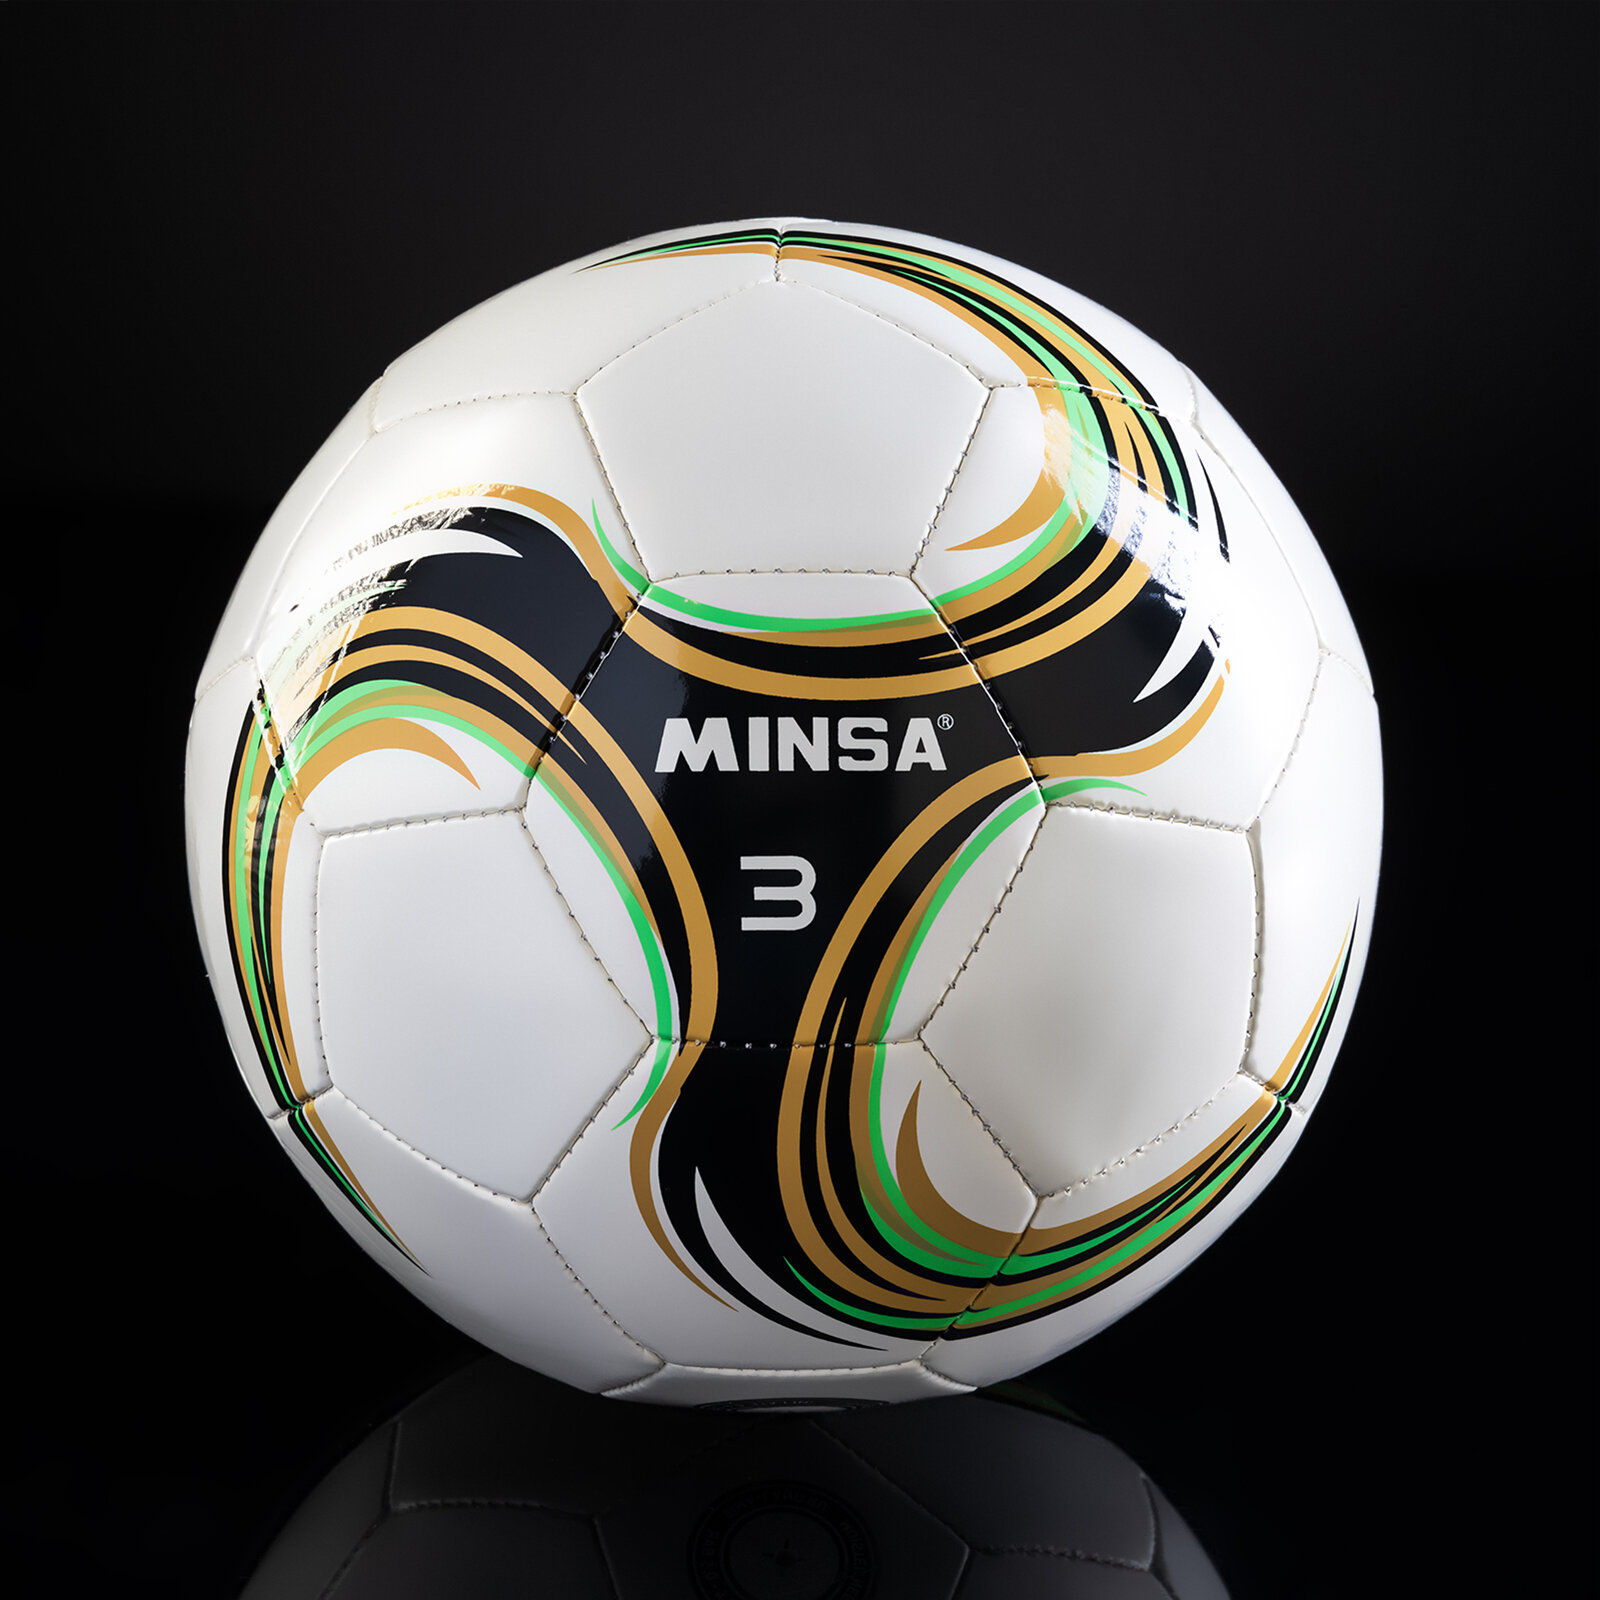 Мяч футбольный MINSA Spin, TPU, машинная сшивка, размер 3